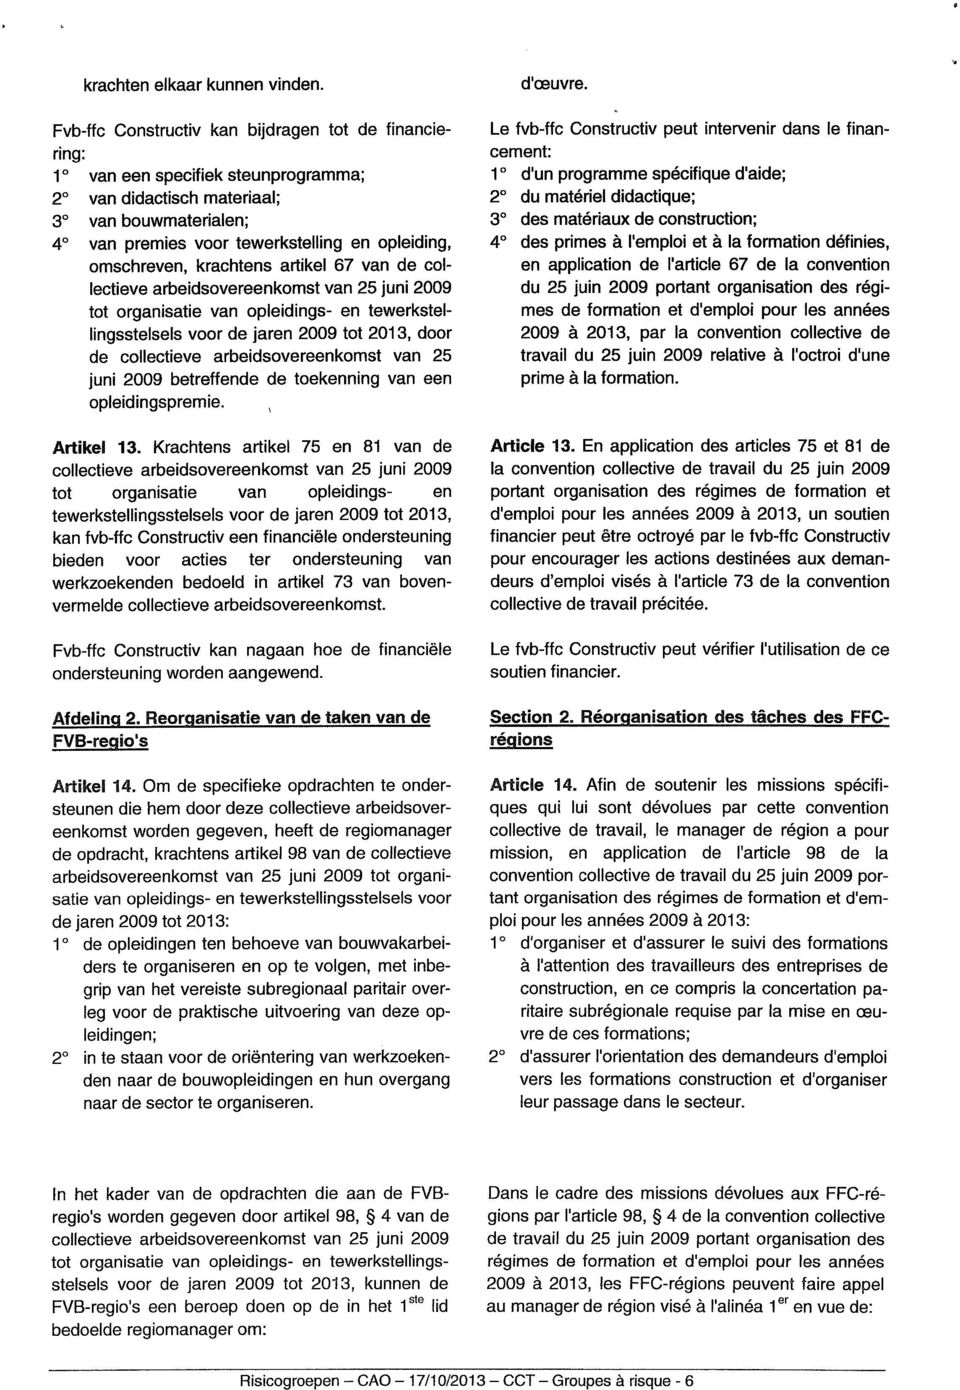 omschreven, krachtens artikel 67 van de collectieve arbeidsovereenkomst van 25 juni 2009 tot organisatie van opleidings- en tewerkstellingsstelsels voor de jaren 2009 tot 2013, door de collectieve